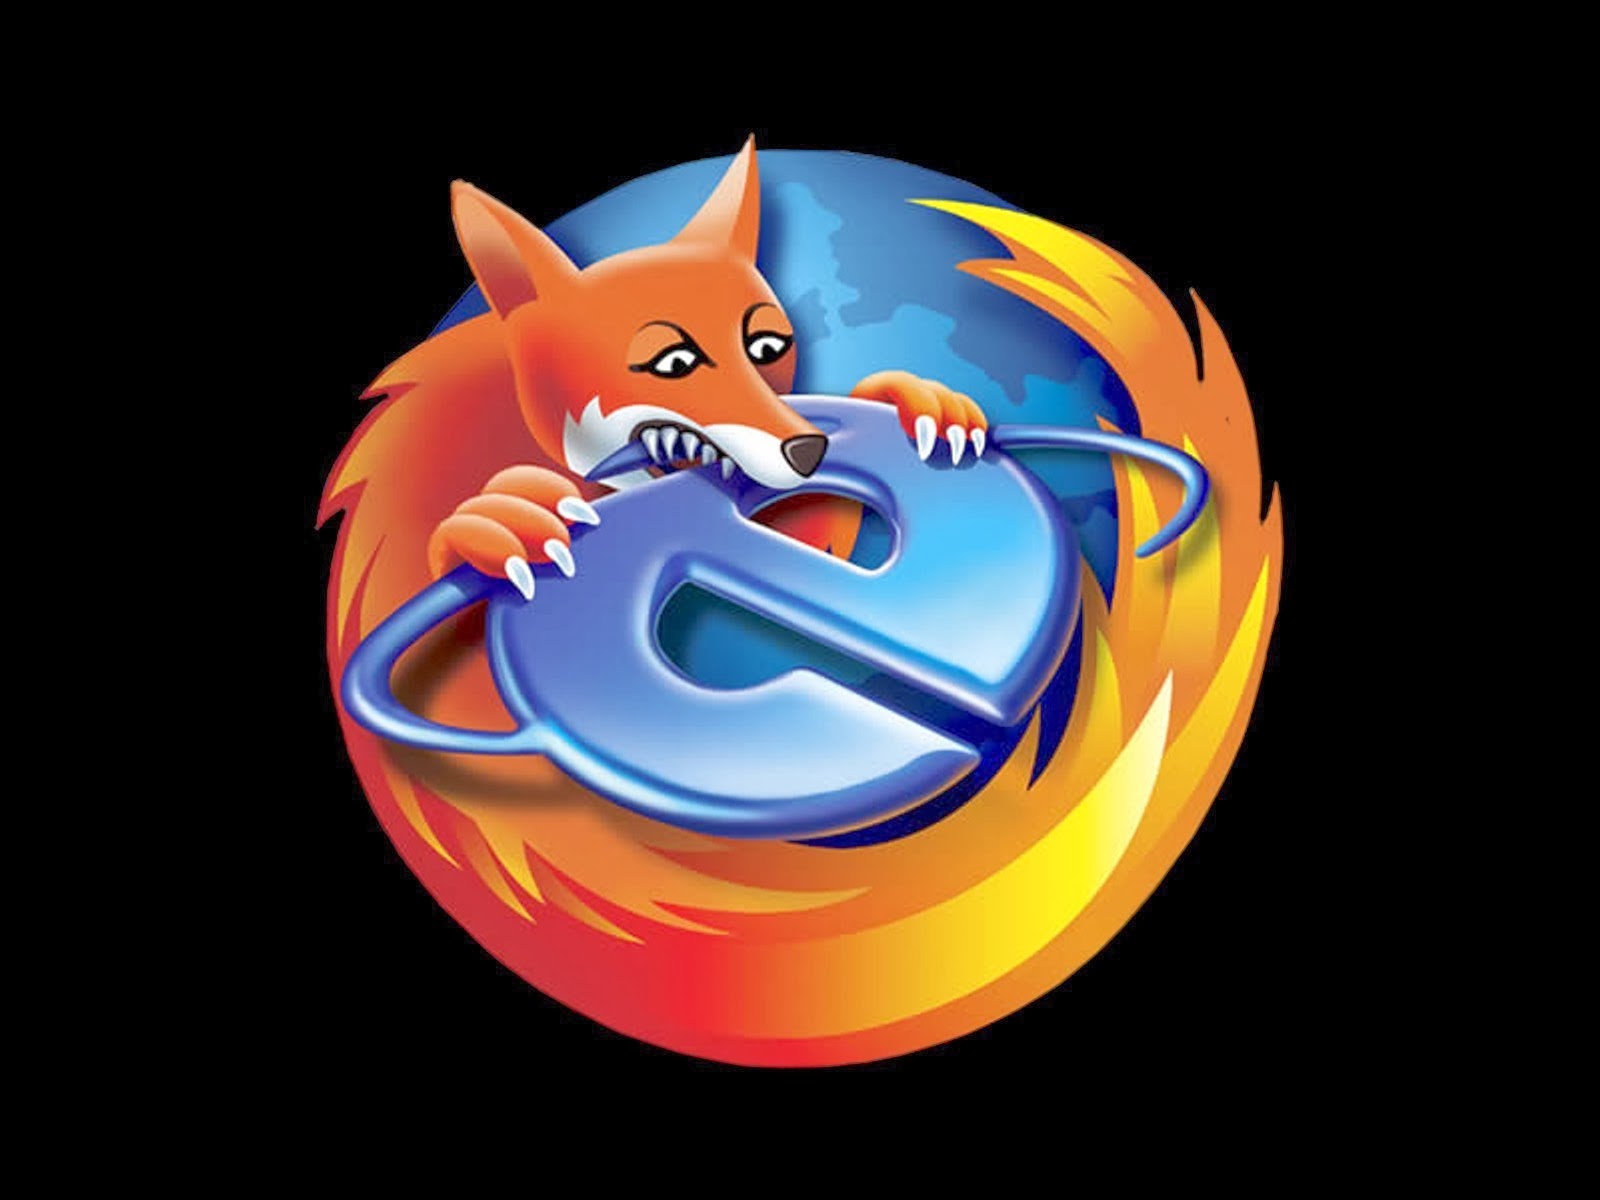 http://4.bp.blogspot.com/_w8vdEmYC4Kc/TNFcI7jT4wI/AAAAAAAAAMA/vdPOQ-U8zqs/d/Firefox+Biteing+Internet+Explorer+1600x1200++%5Bby+hrwalls.blogspot.com%5D.jpg